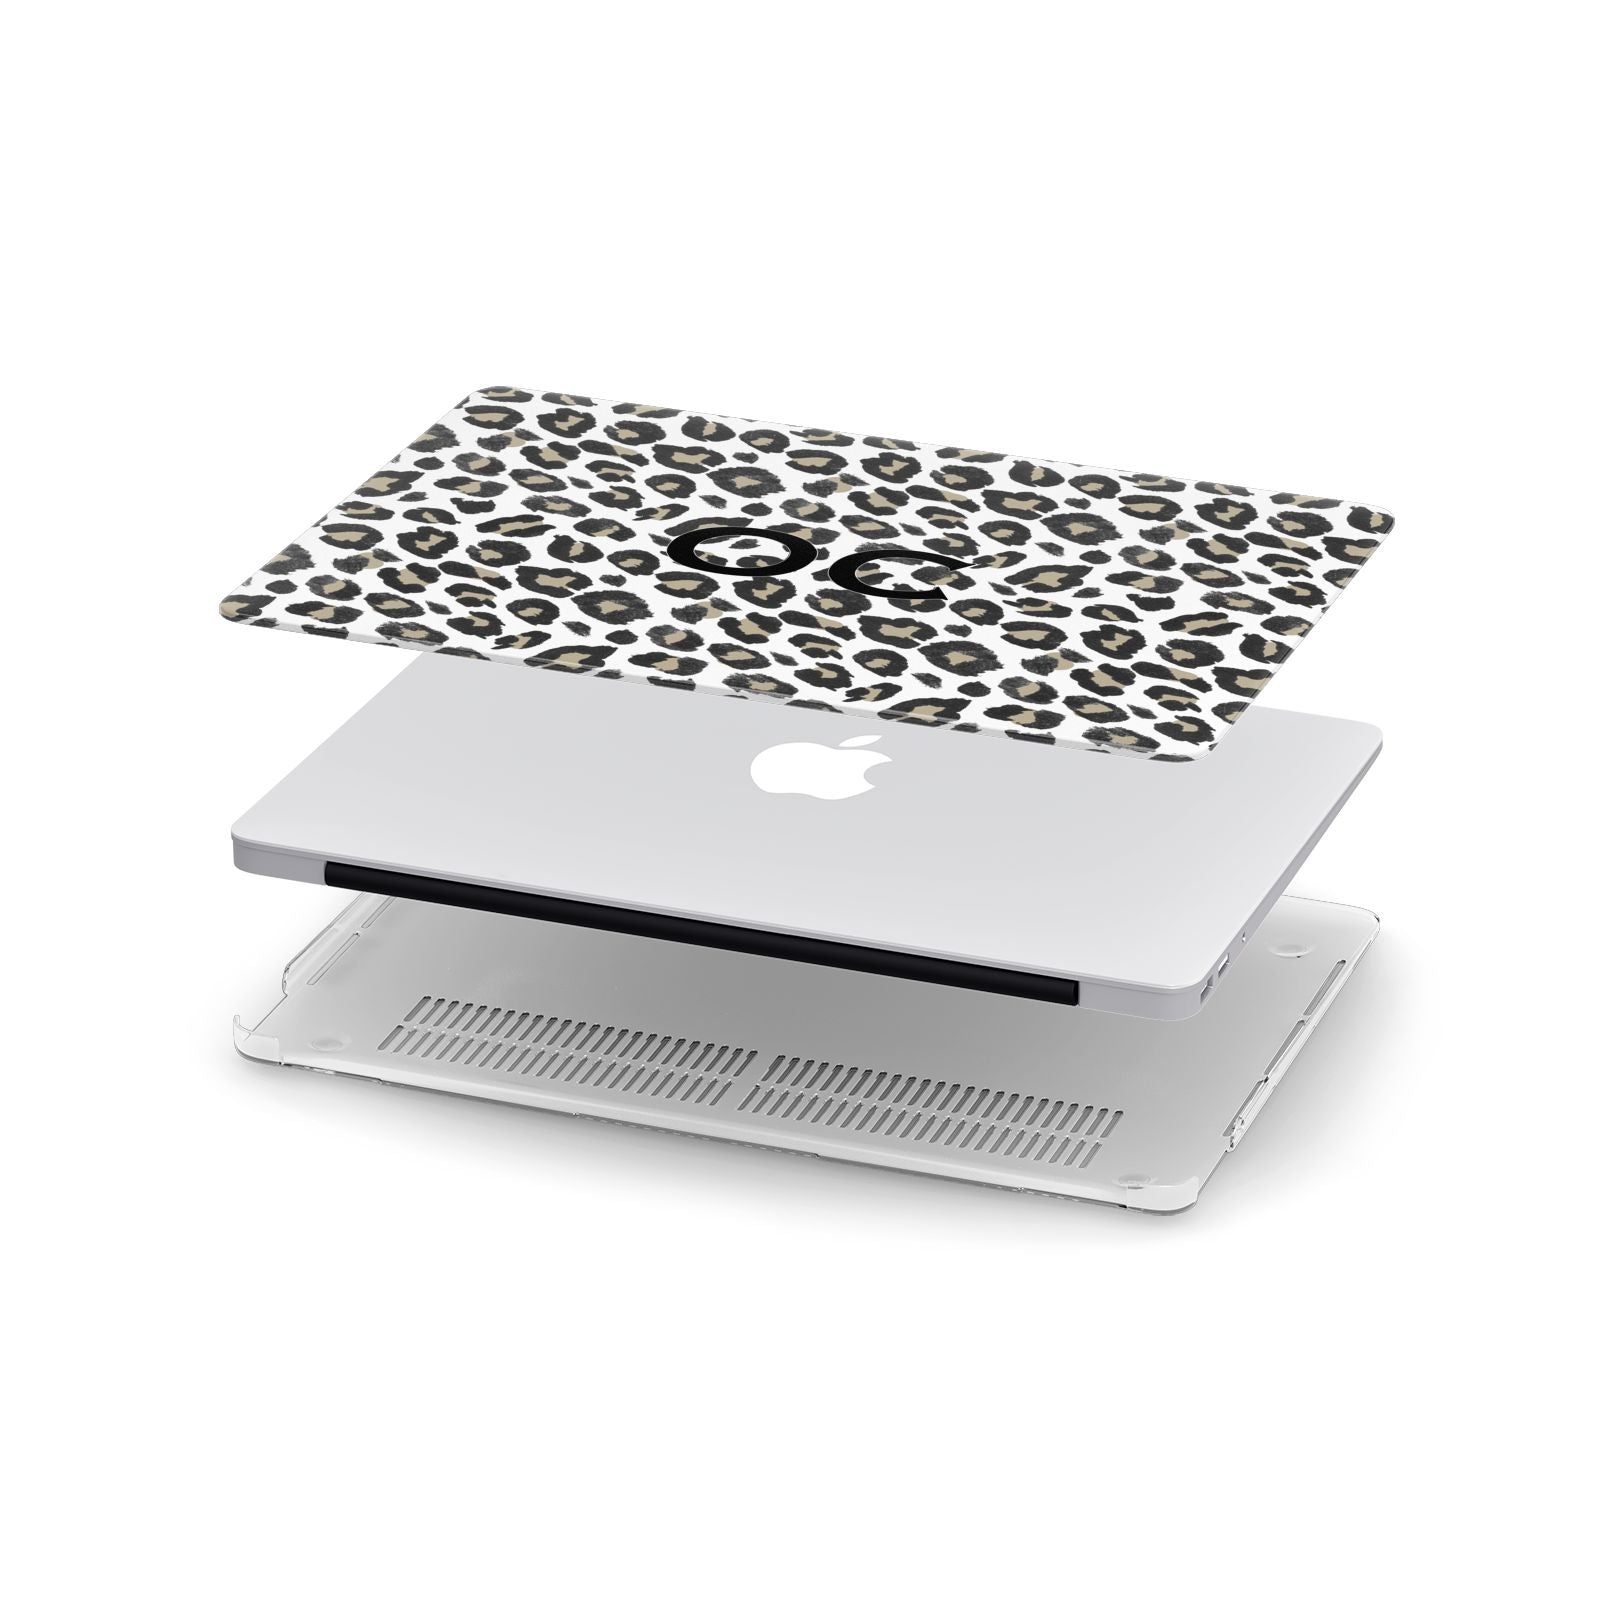 Tan Leopard Print Pattern Apple MacBook Case in Detail